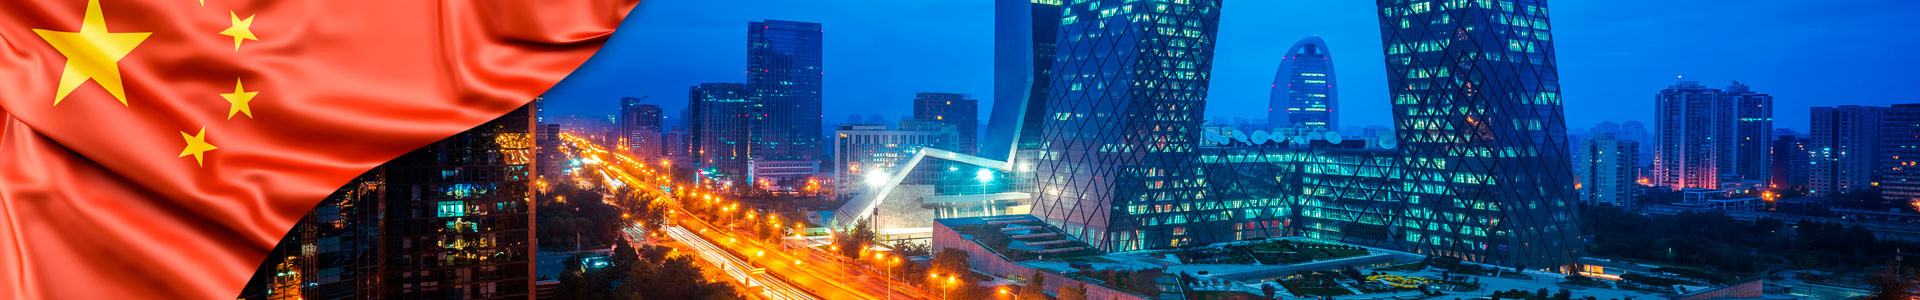 Bandera de China con paisaje urbano nocturno con edificio y carretera en la ciudad de Pekín, China